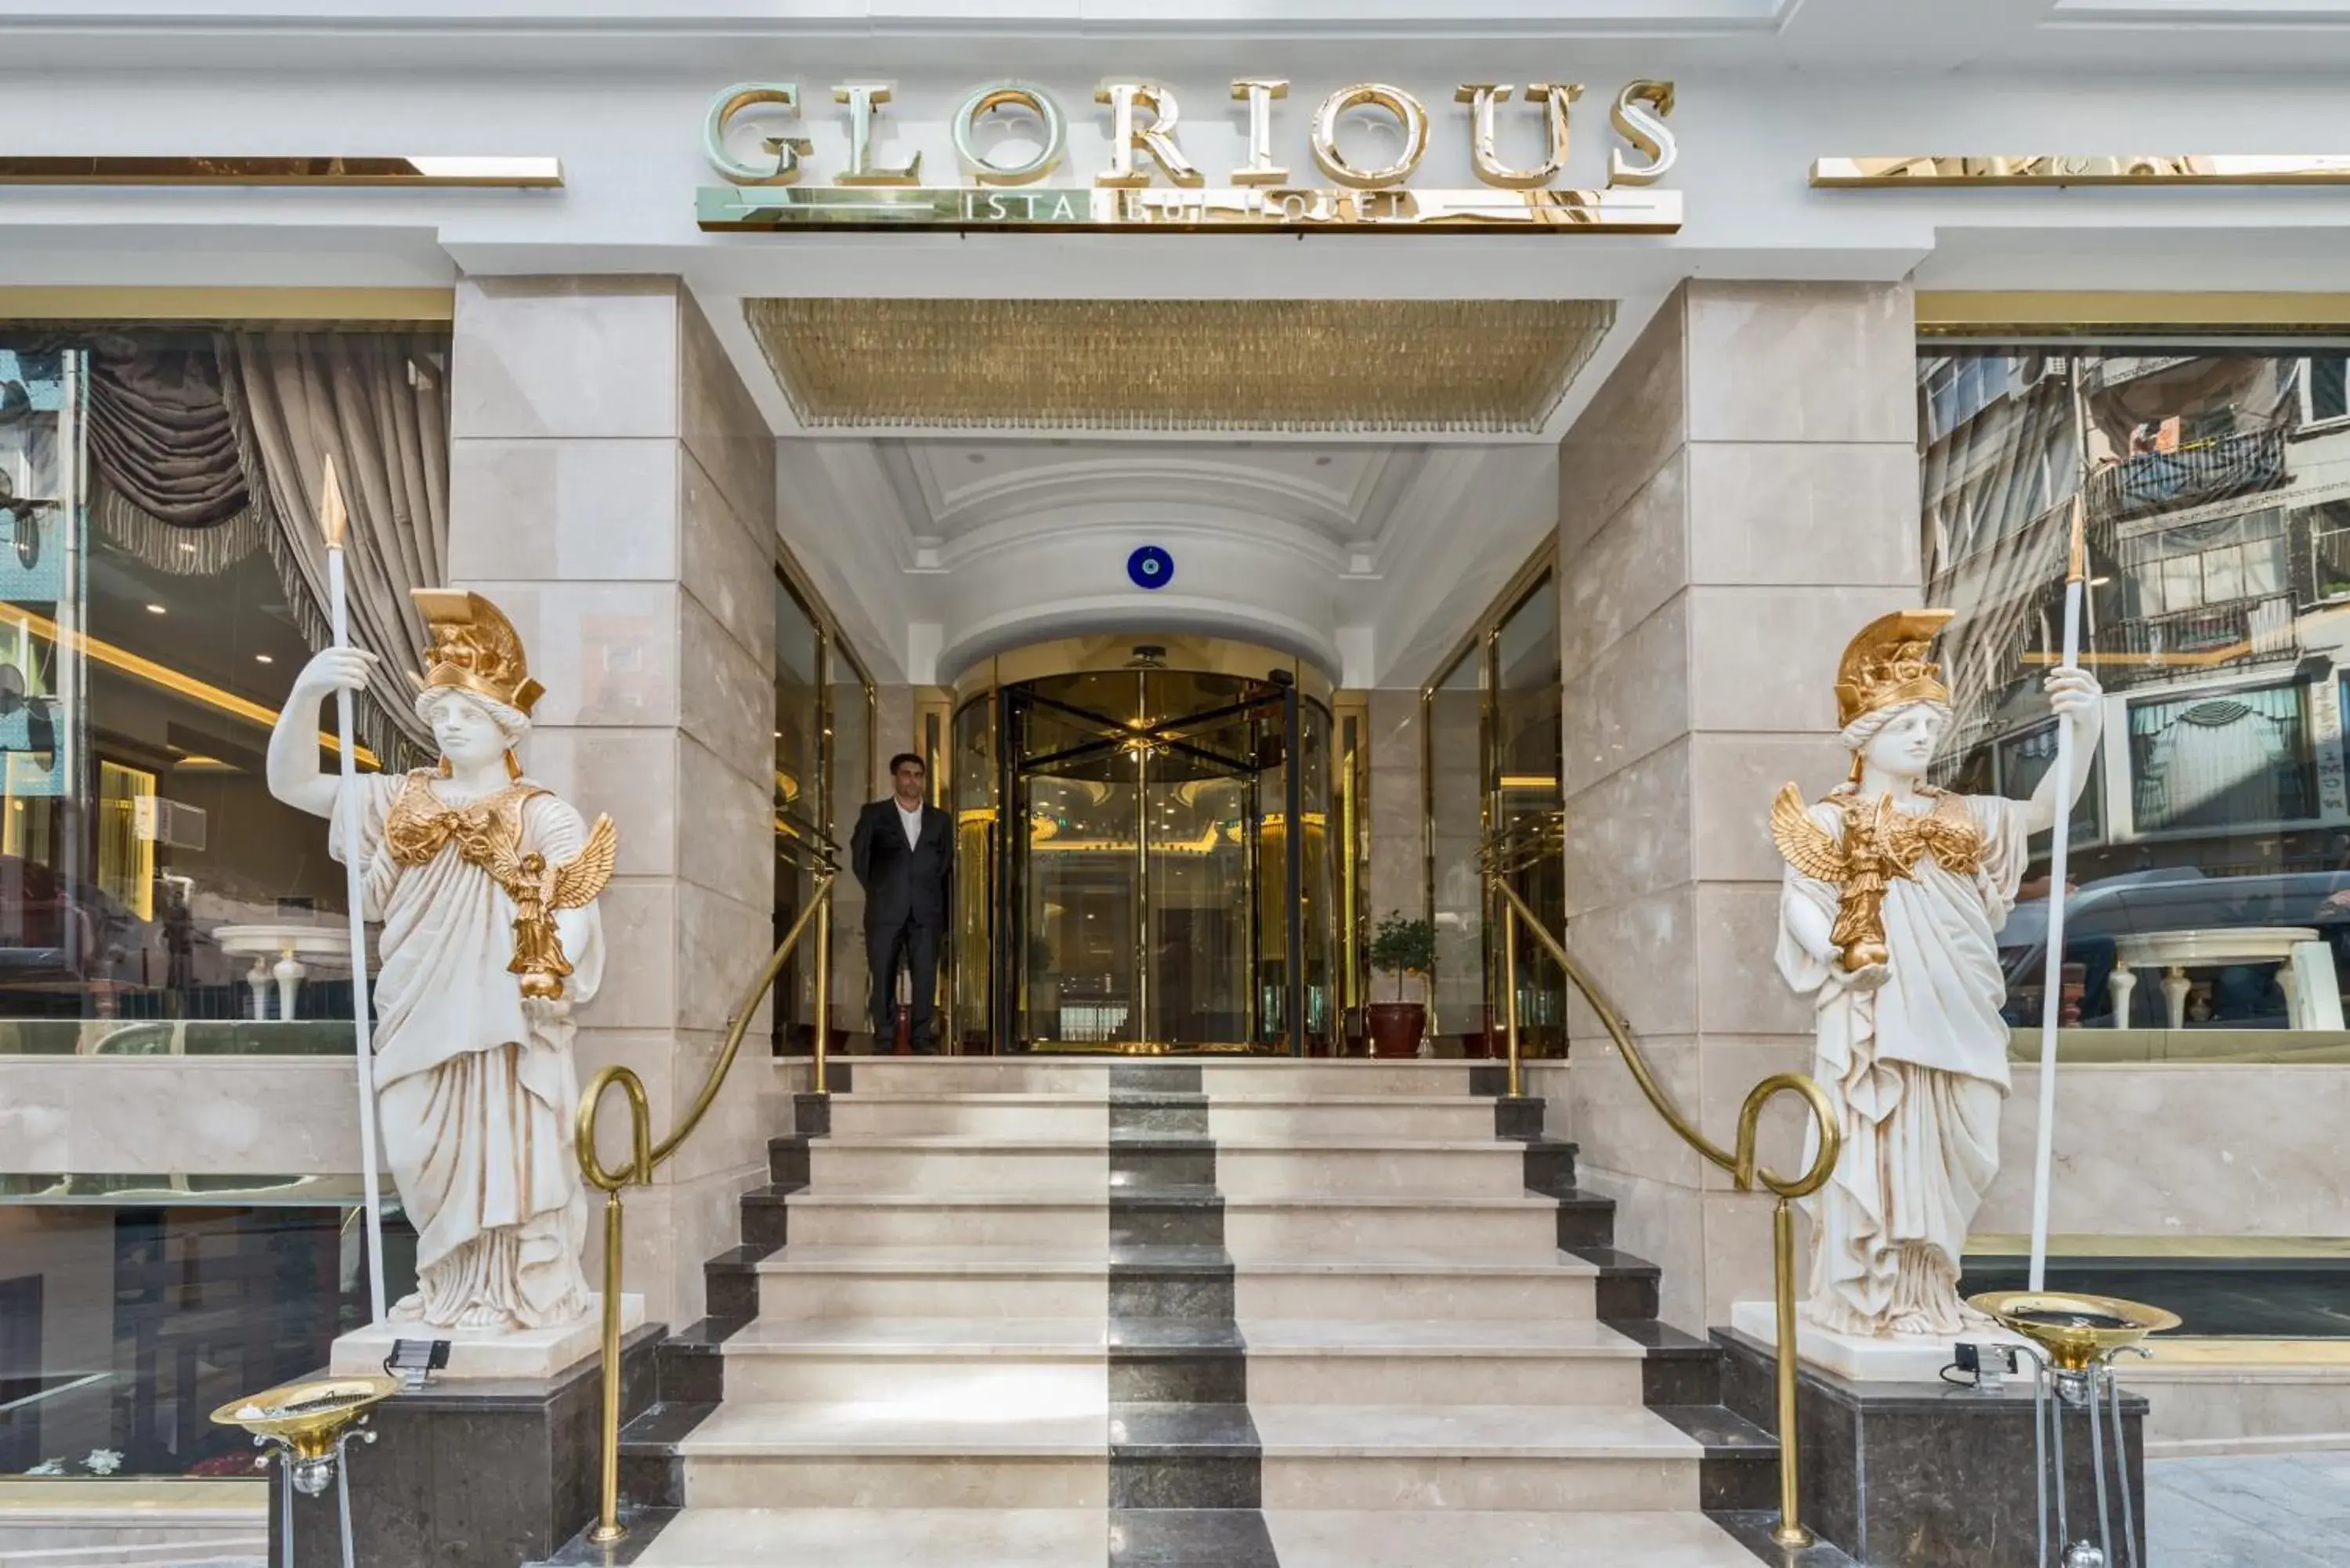 Facade/entrance in Glorious Hotel